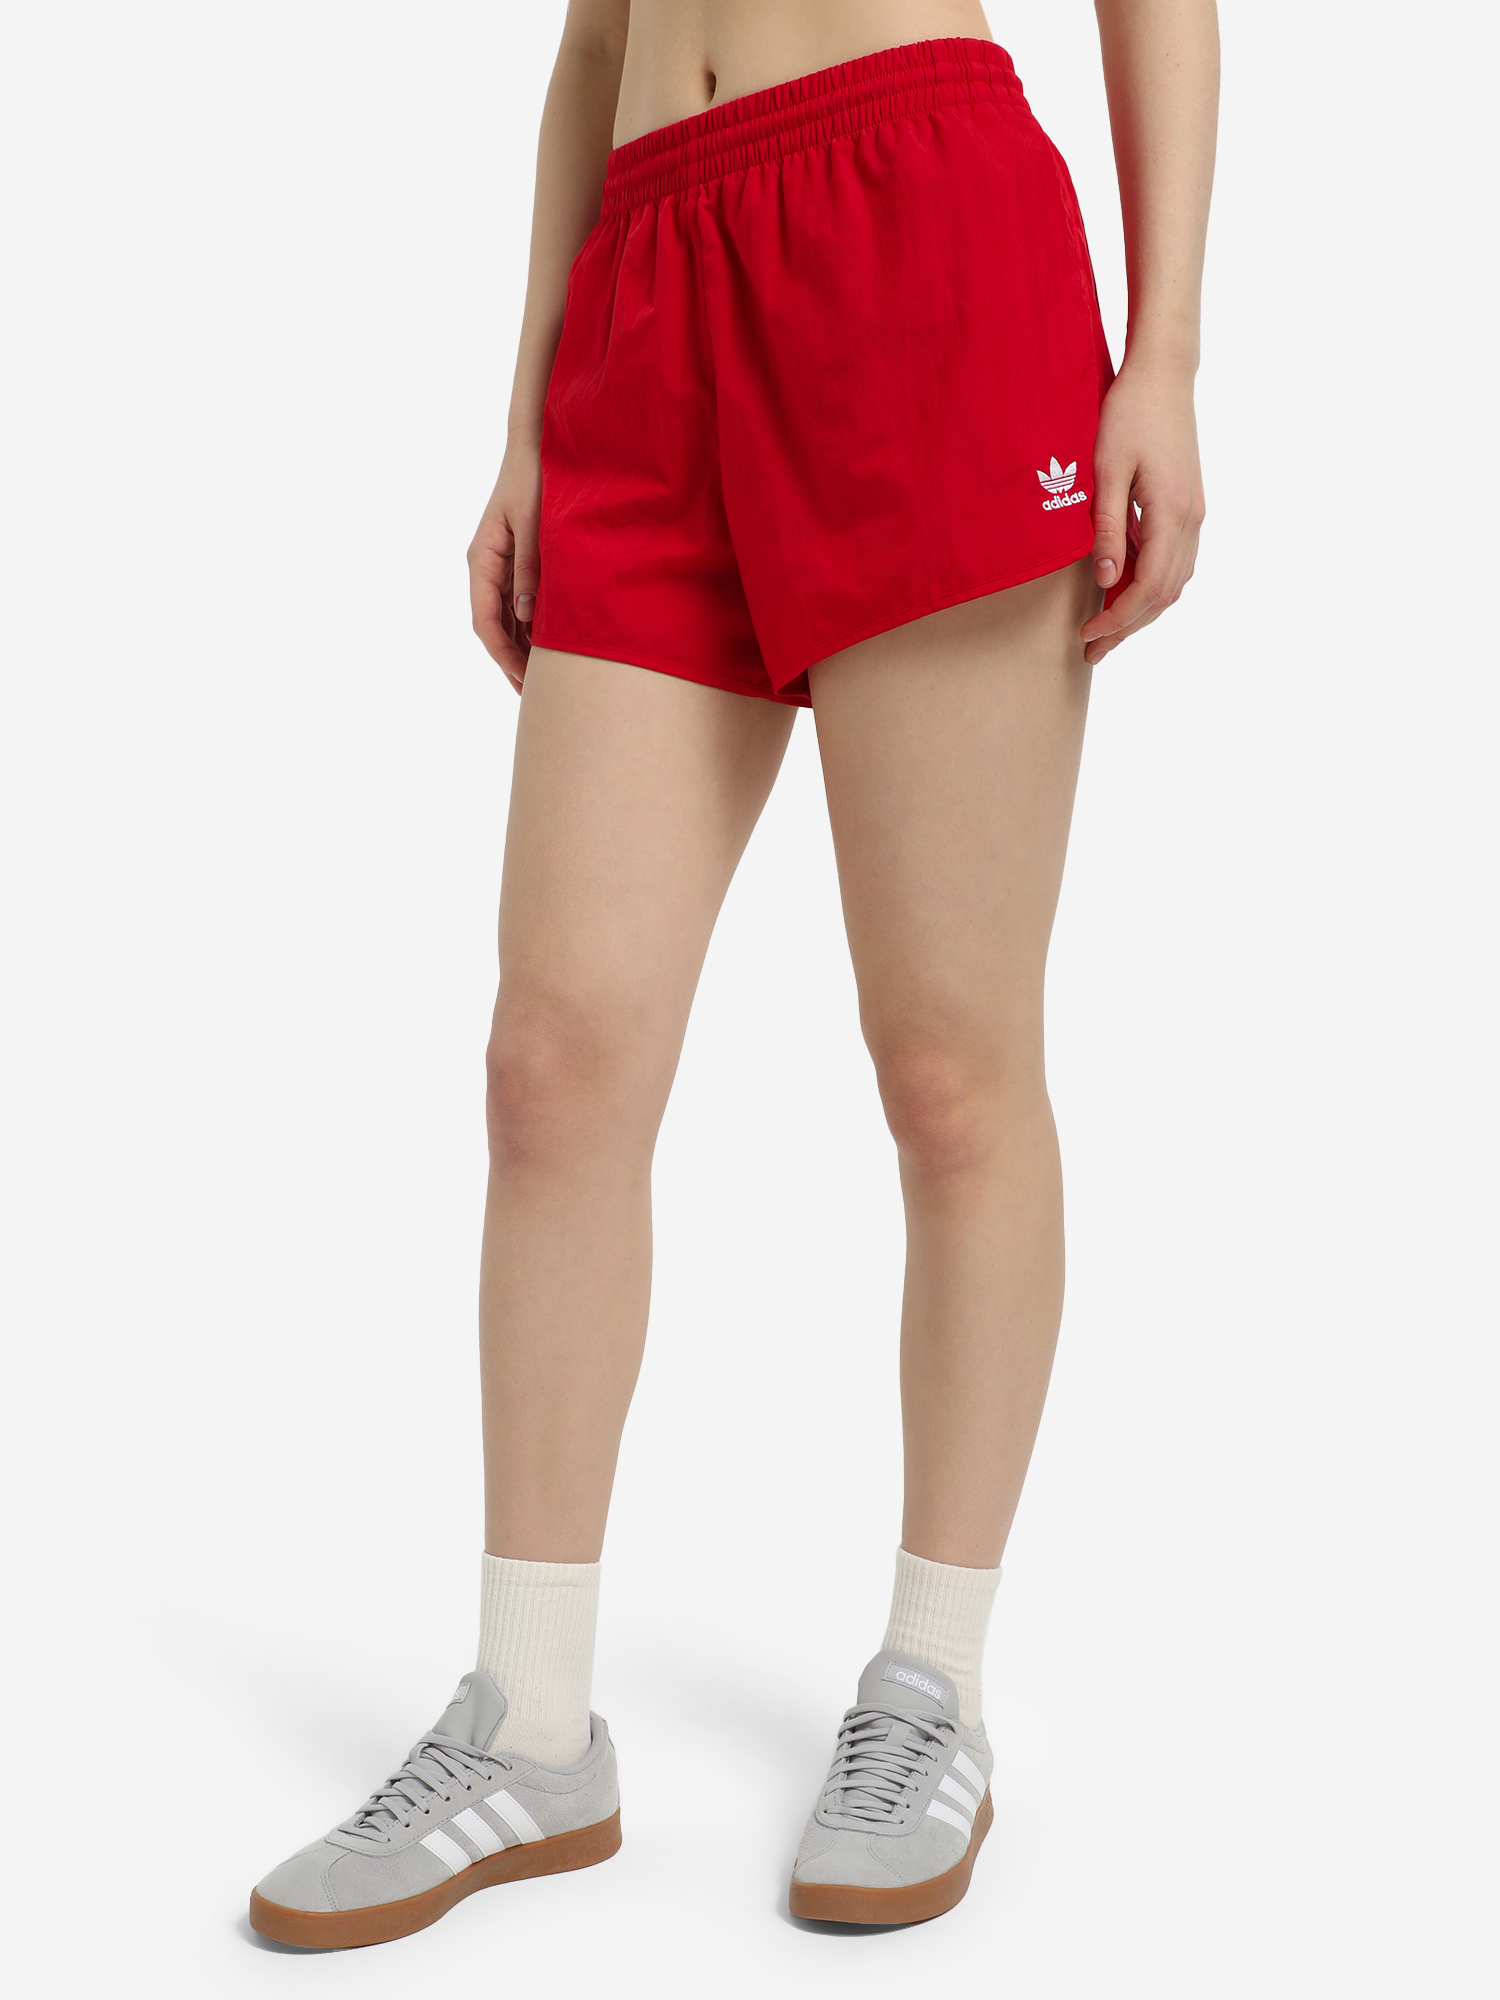 Шорты женские adidas 3-Stripes, Красный футболка мужская adidas красный